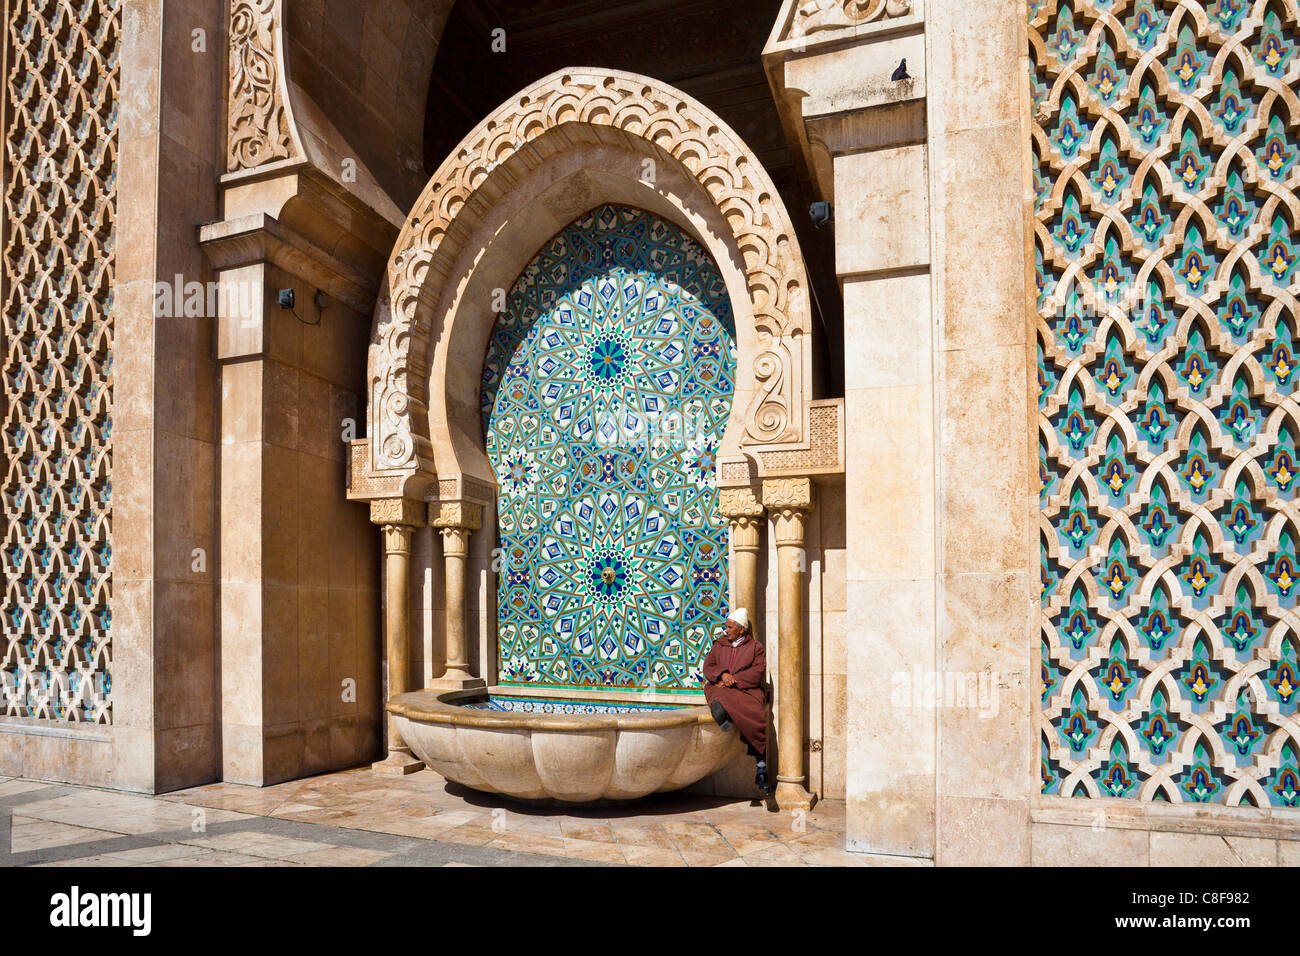 Le Maroc, l'Afrique du Nord, d'Afrique, Casablanca, Hassan II, mosquée, détail Banque D'Images